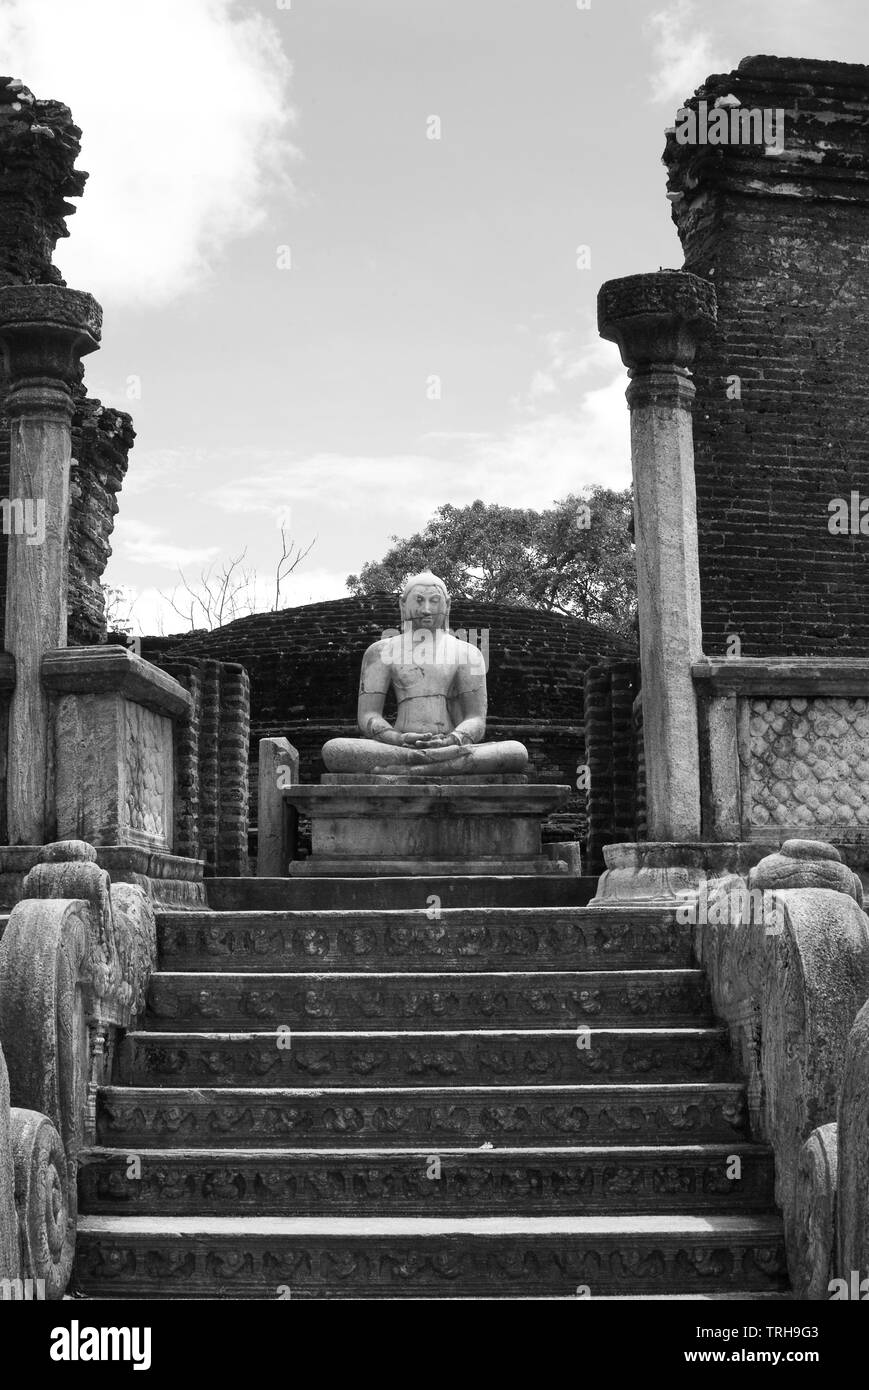 Statue de Bouddha assis à l'ancienne cité de Polonnaruwa au Sri Lanka, datant du 10ème siècle AD. Banque D'Images